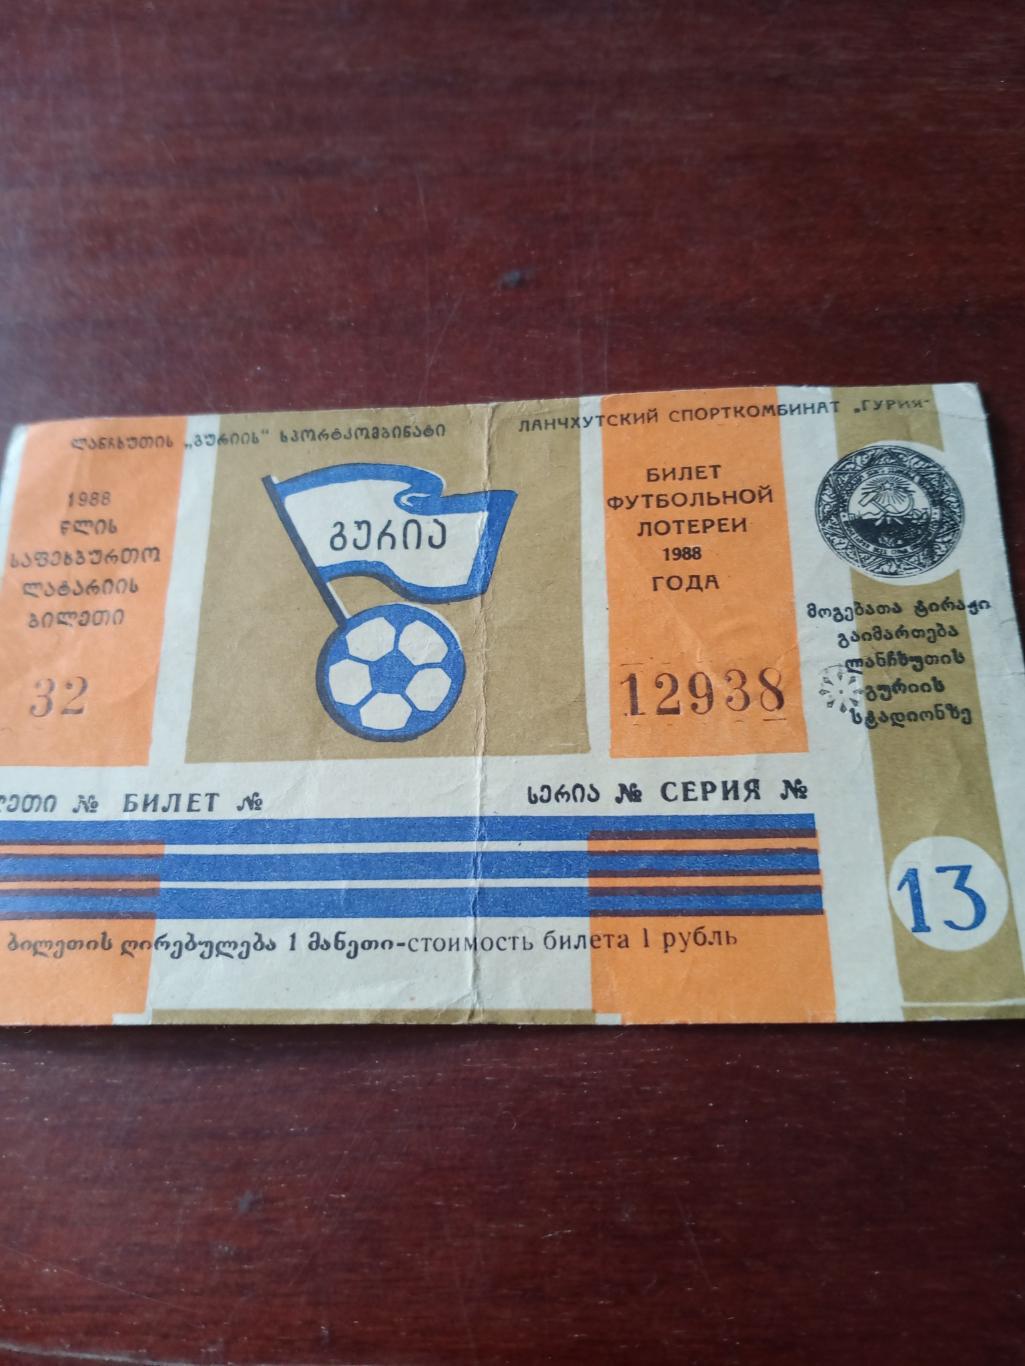 Билет футбольной лотереи. Стадион г.Ланчхути. 1988 год